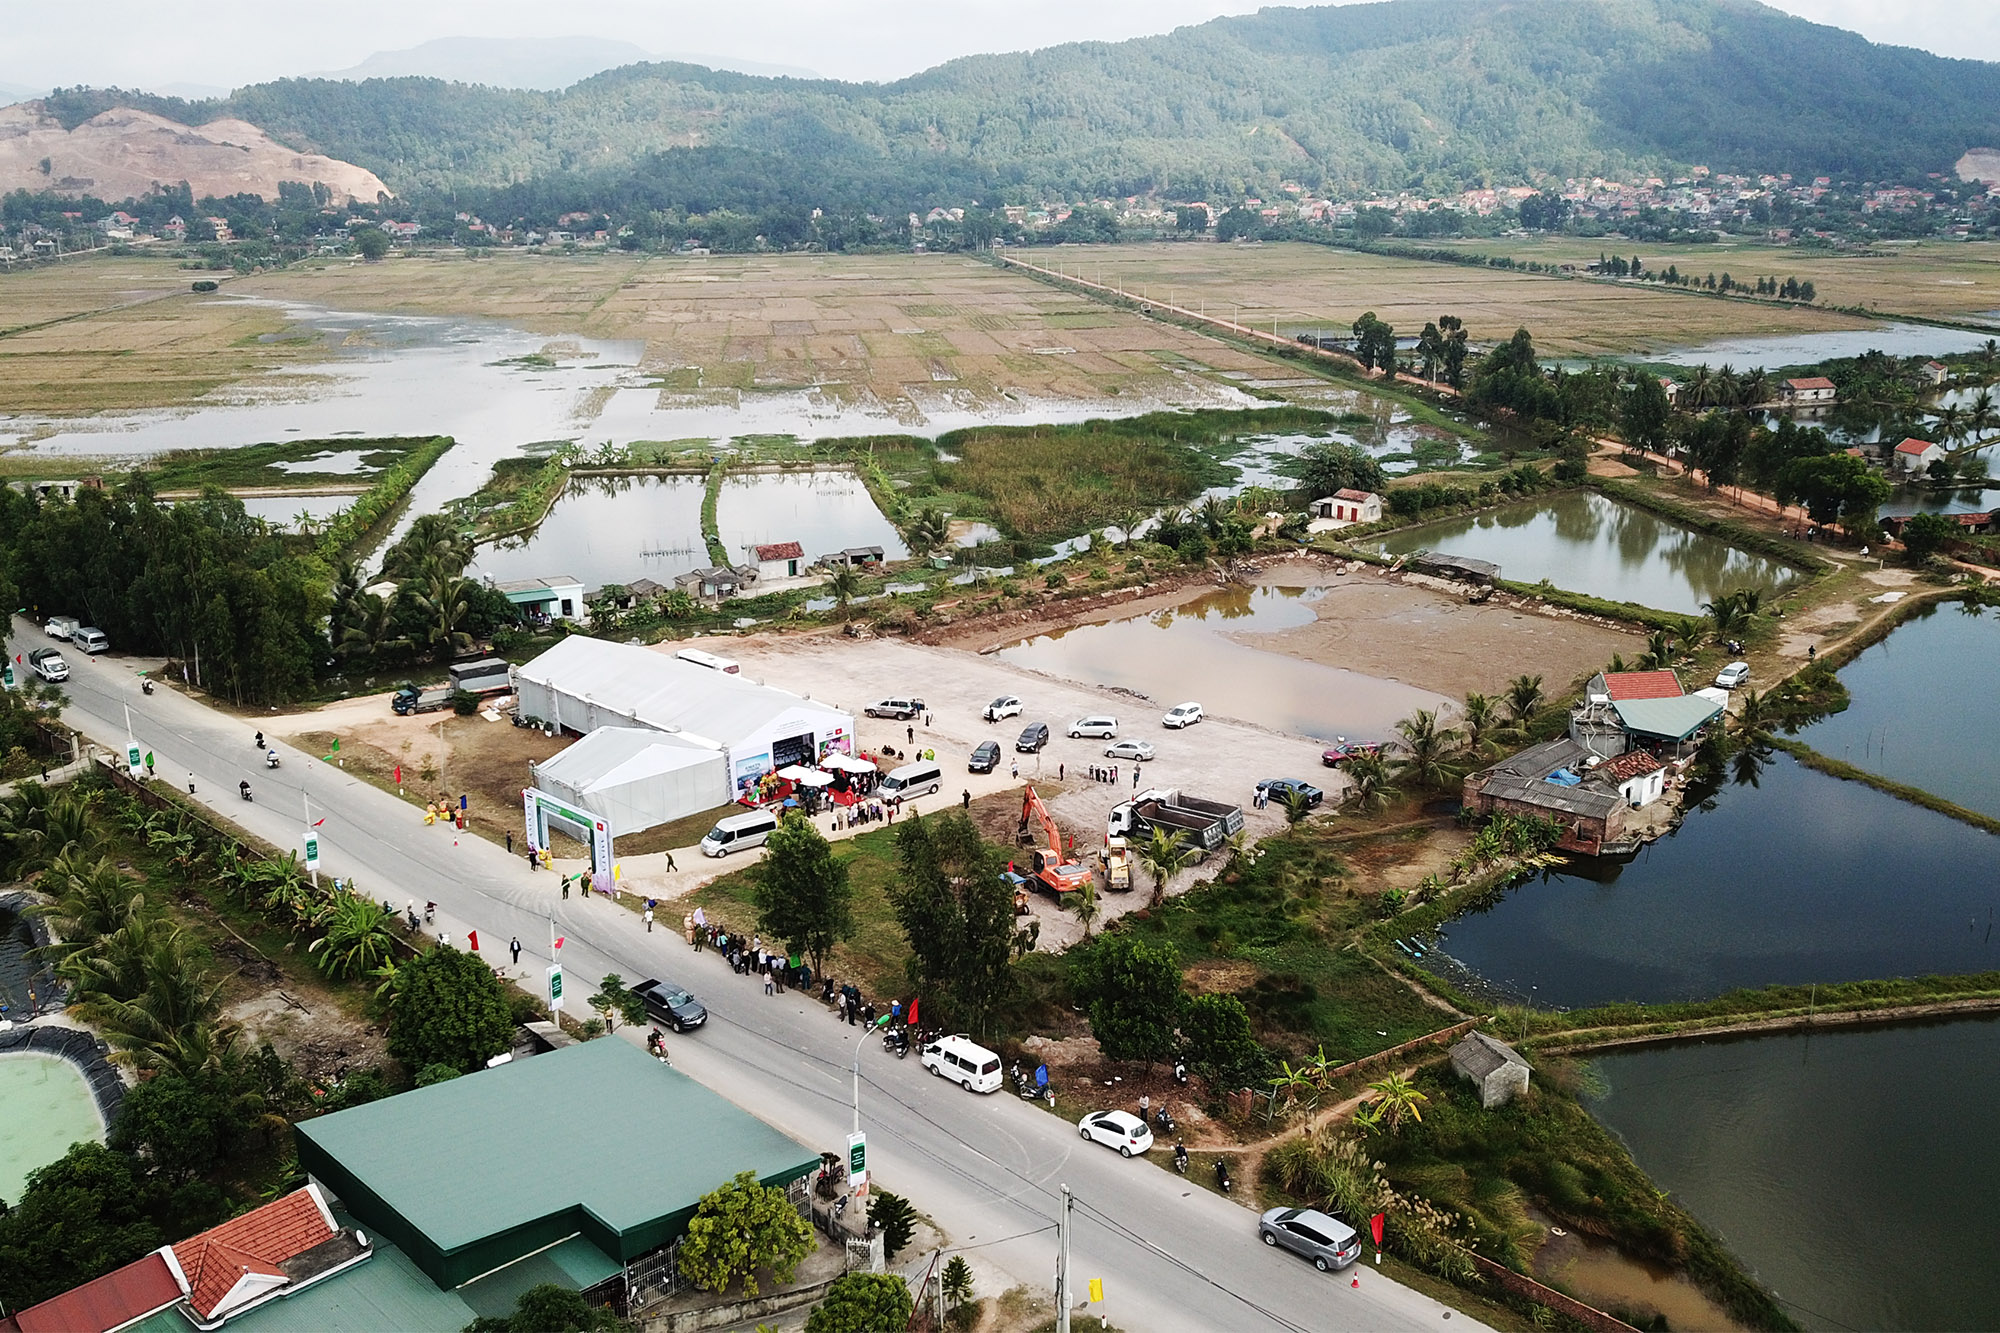 Dự án xây dựng, kinh doanh cơ sở hạ tầng Khu công nghiệp Sông Khoai của Tập đoàn Amata được khởi công sẽ góp phần vào sự phát triển của Quảng Yên.